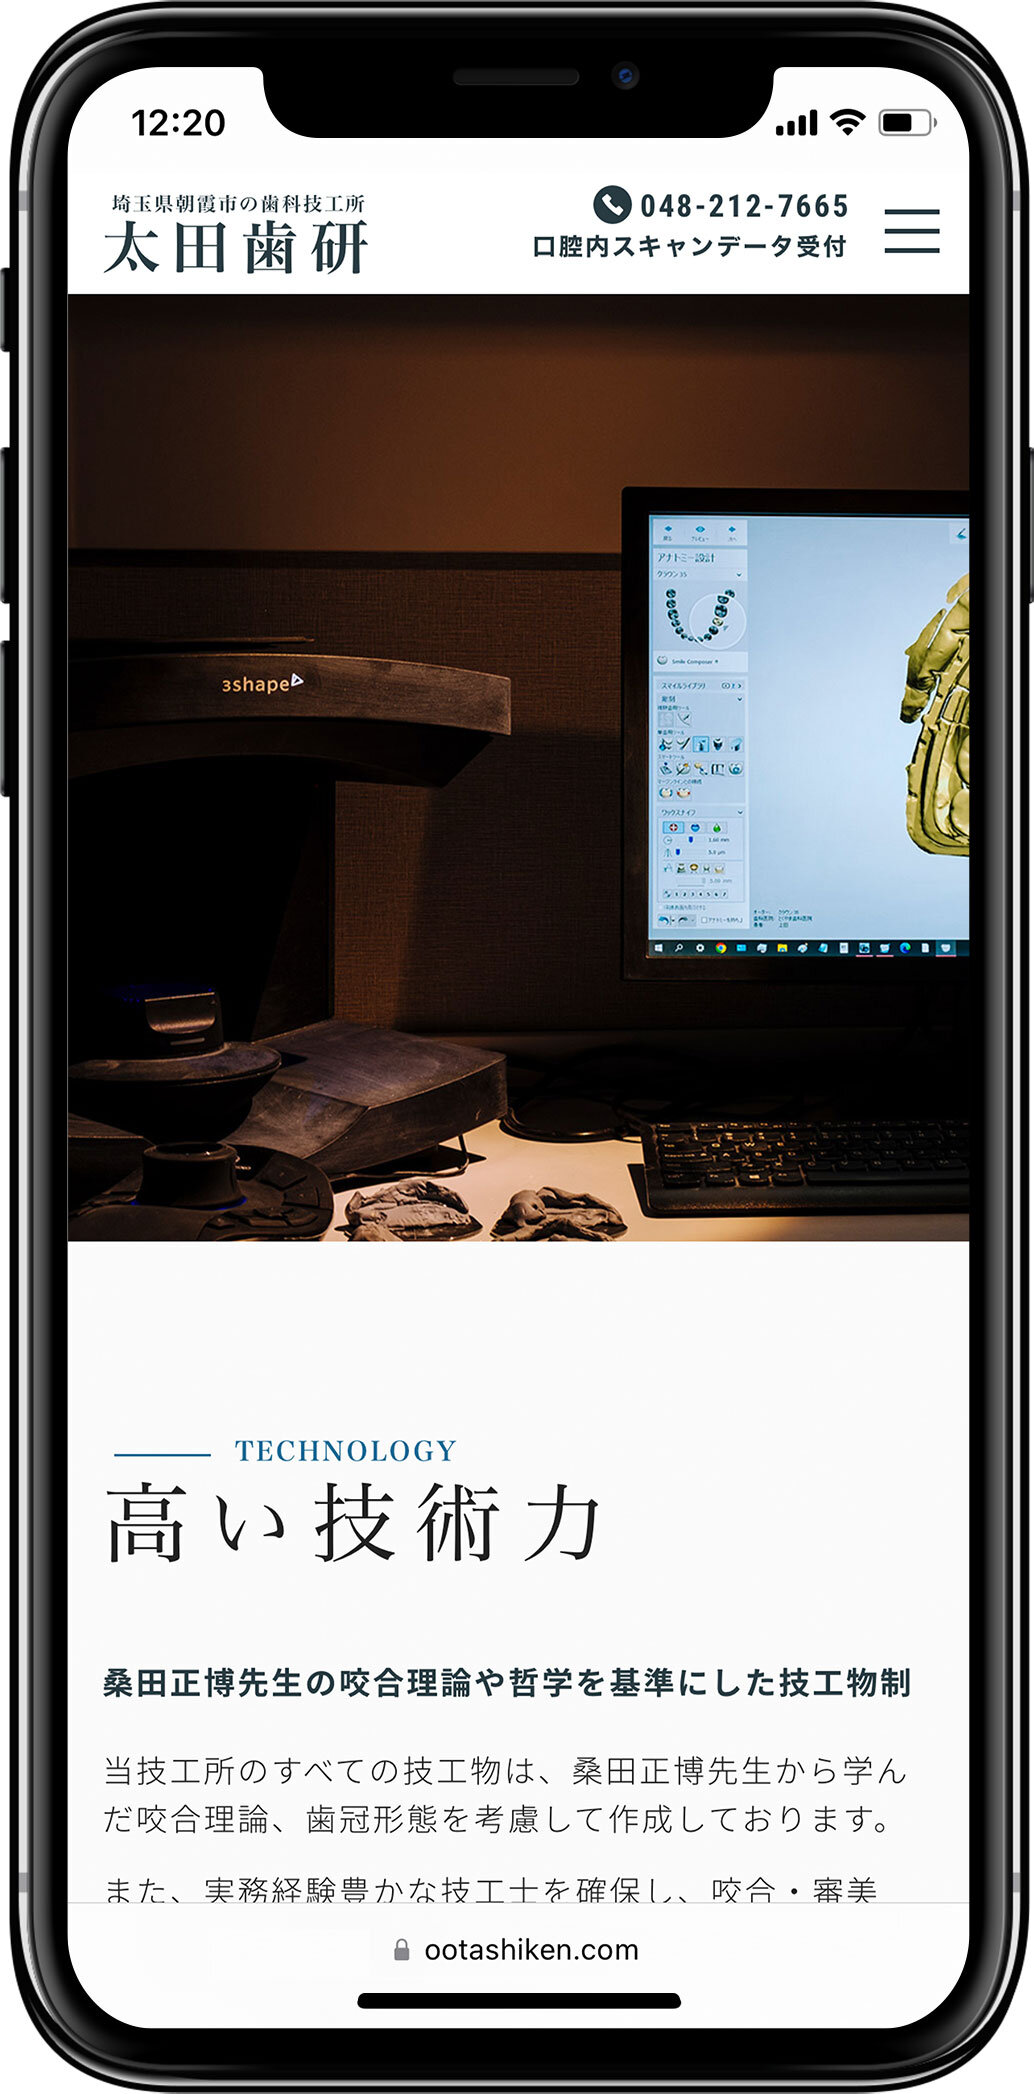 合同会社太田歯研様のウェブサイトを新規制作いたしましたスマートフォンの見た目